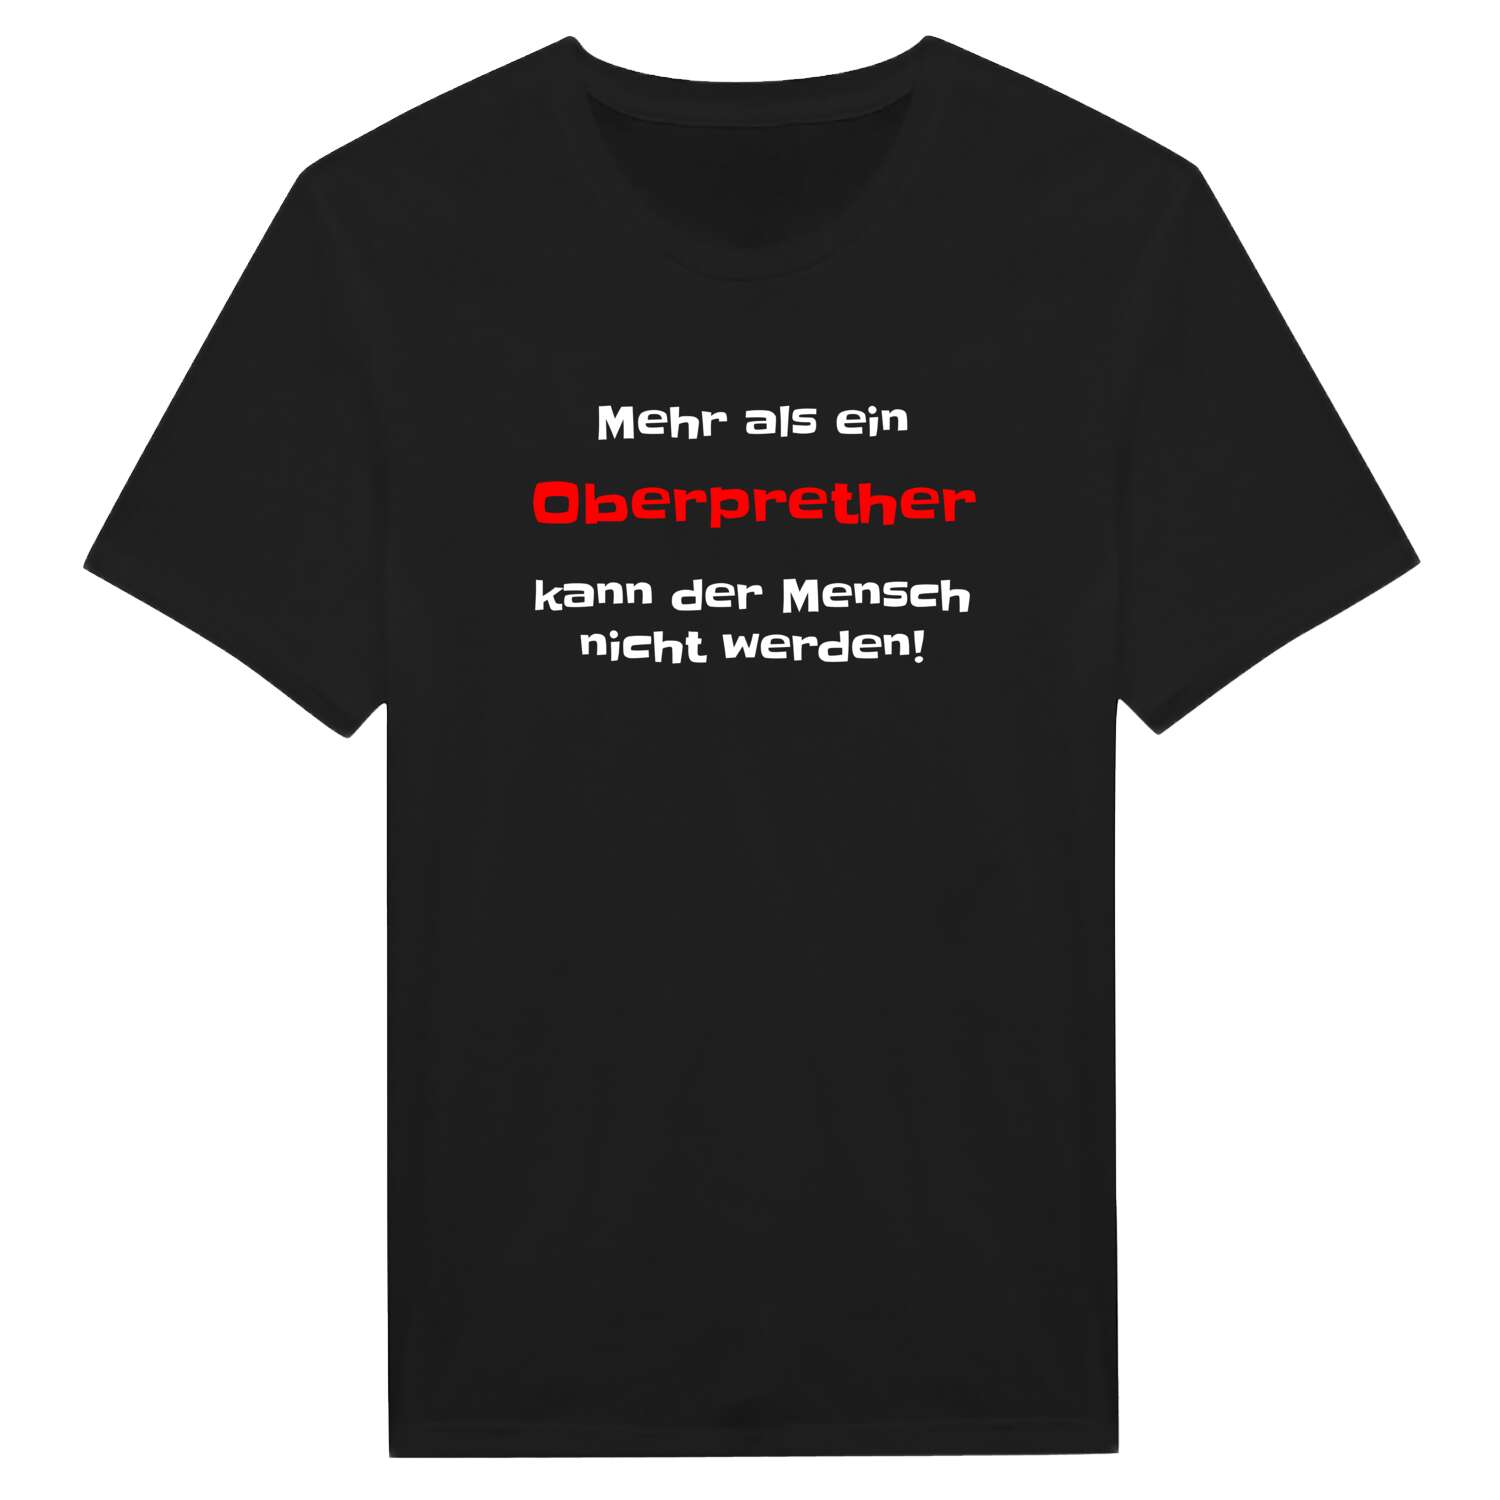 Oberpreth T-Shirt »Mehr als ein«